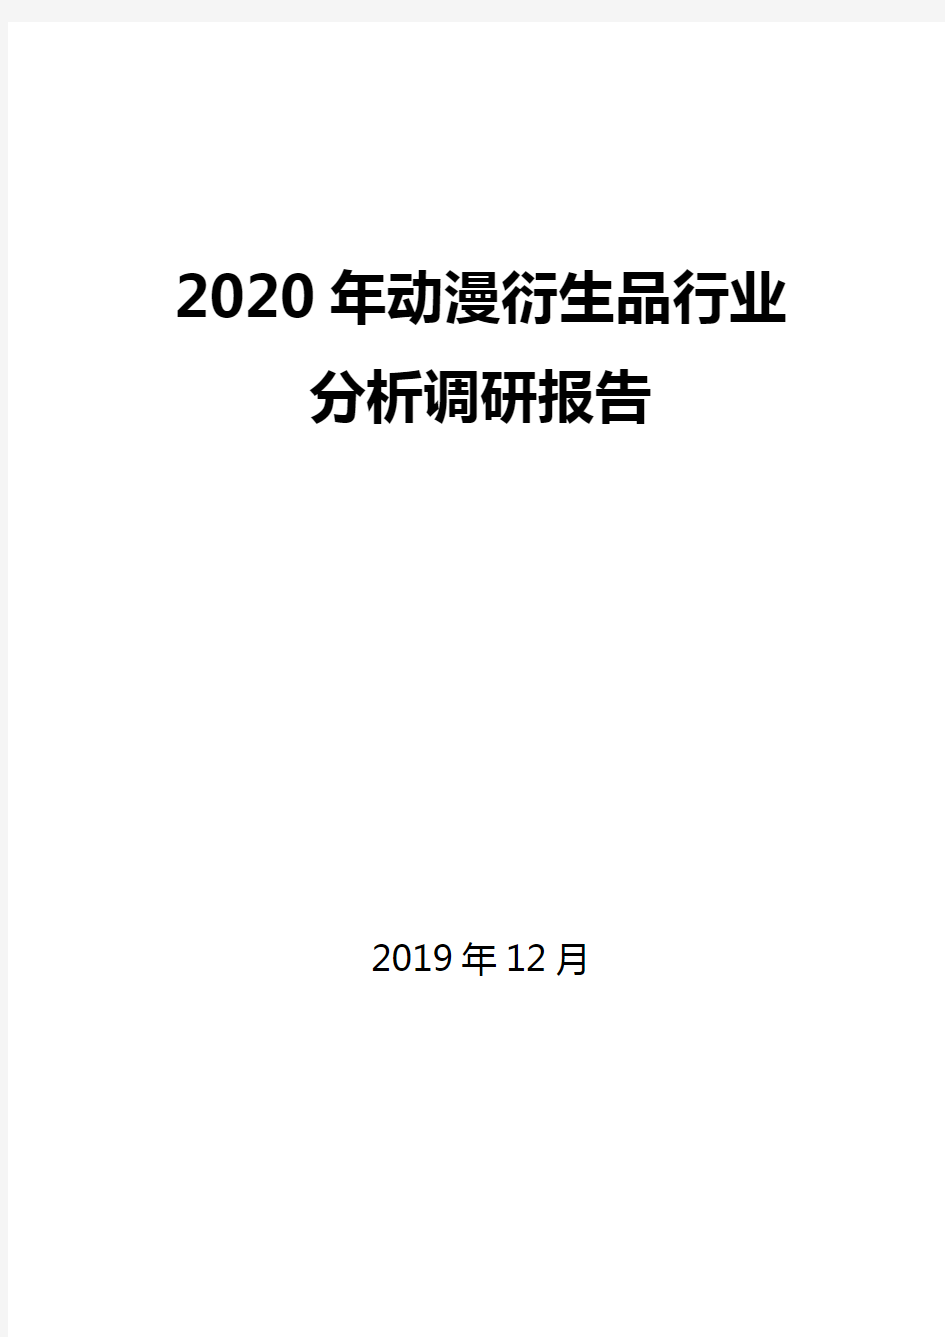 2020年动漫衍生品行业分析调研报告